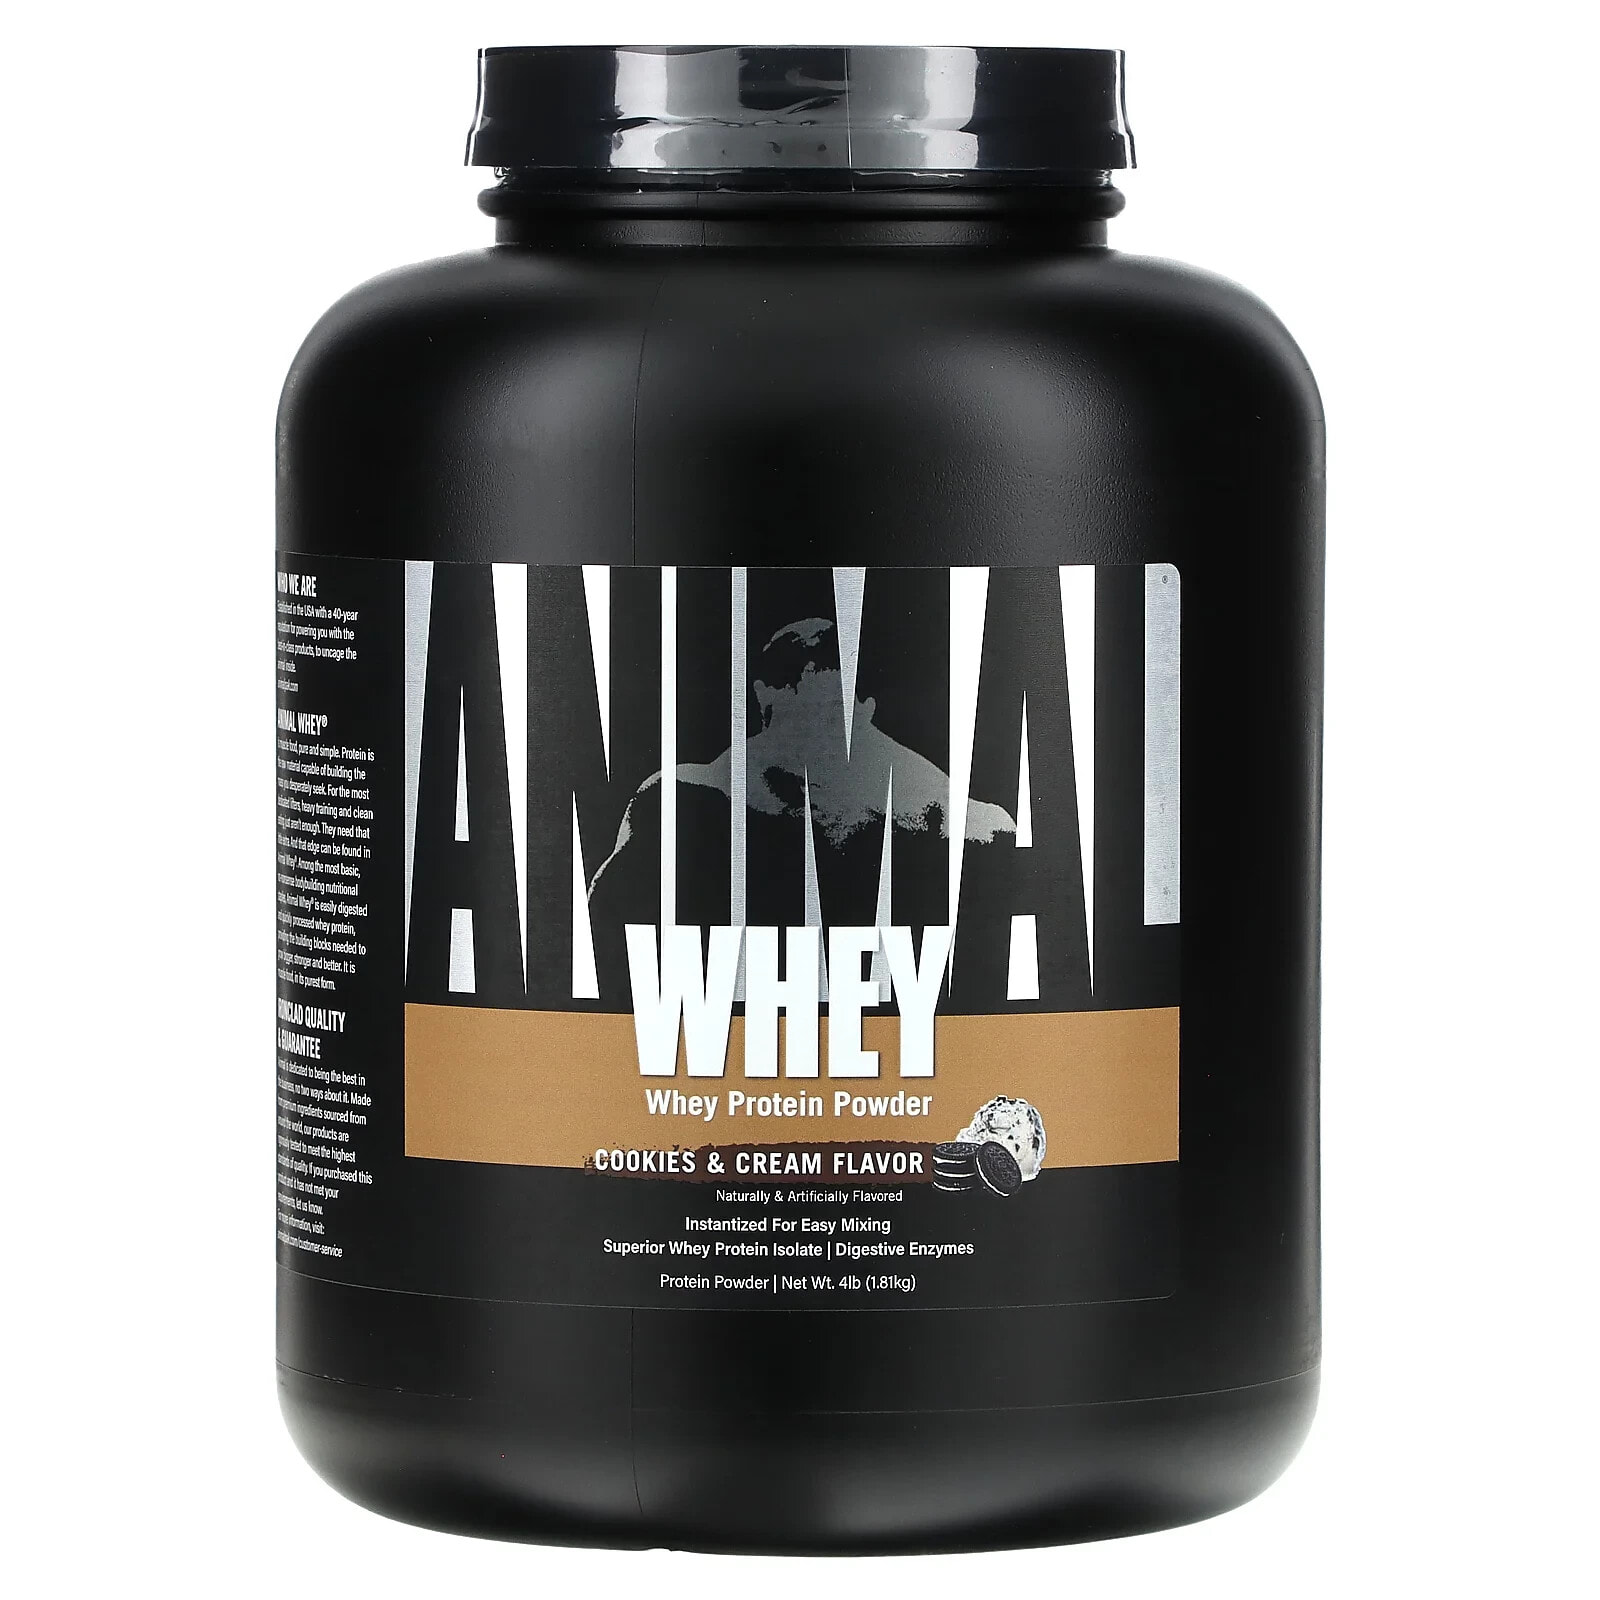 Whey Protein Powder, Cookie & Cream, 4 lb (1.81 kg)